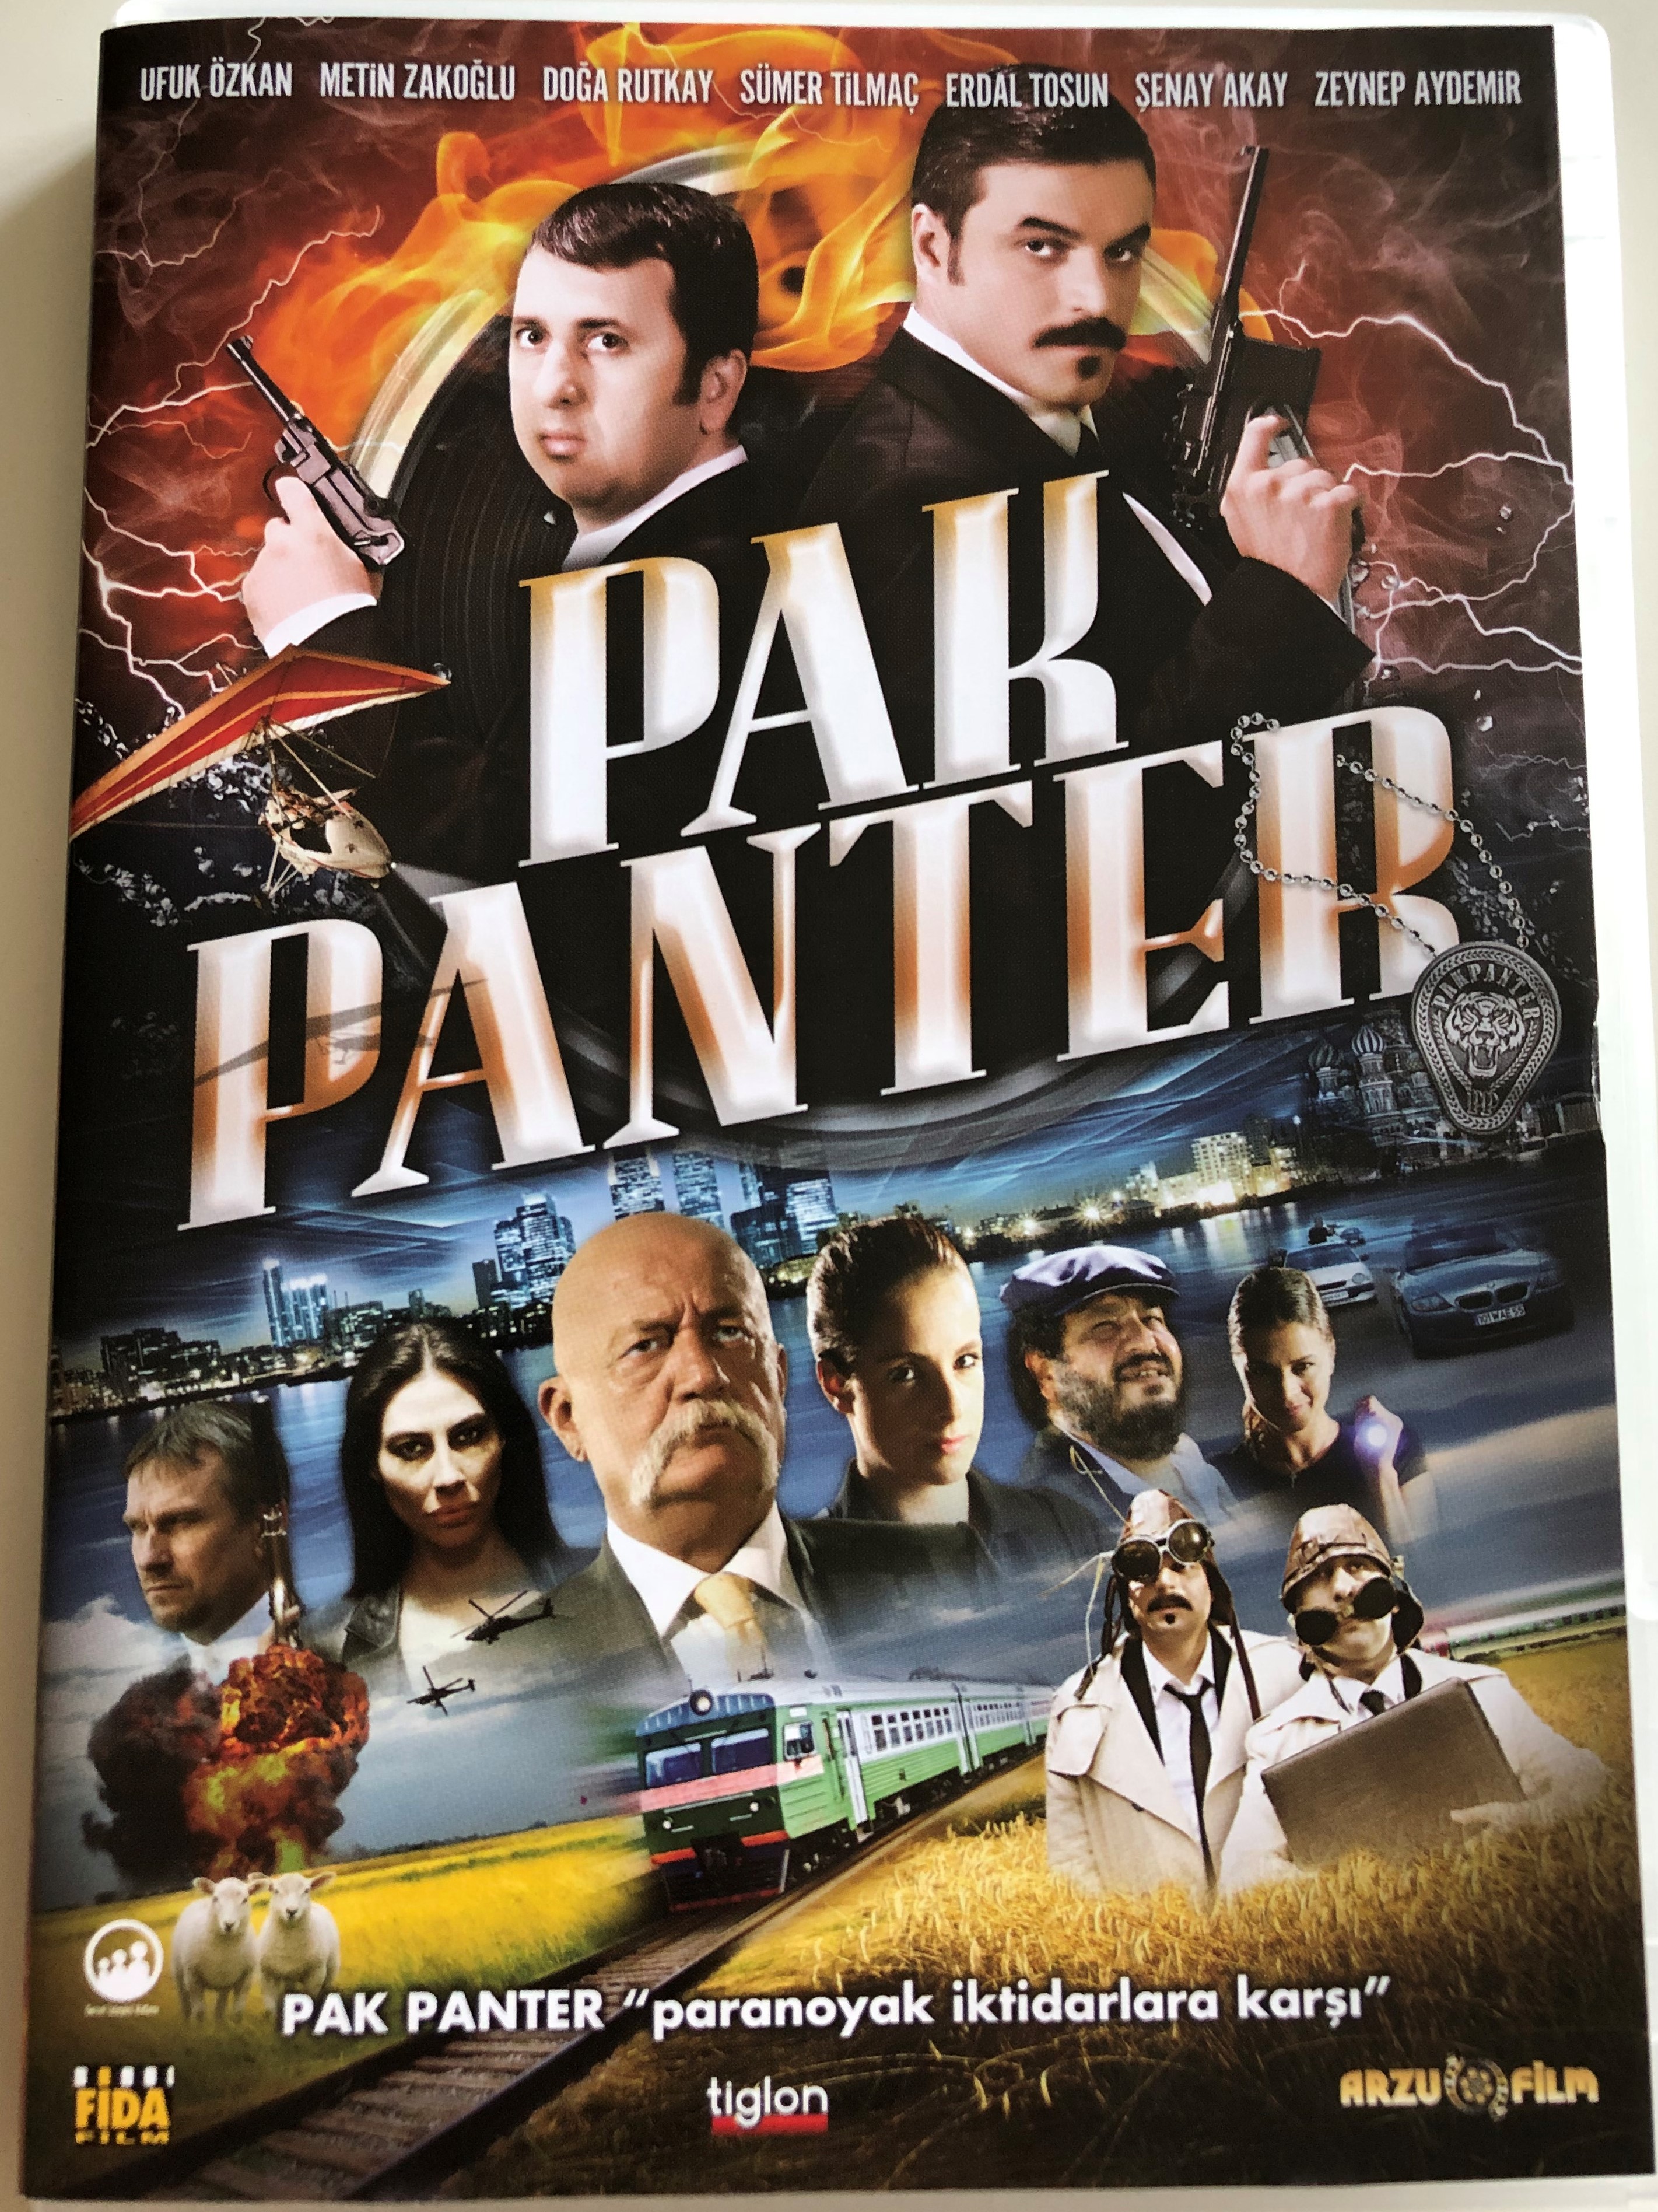 pak-panter-dvd-2010-panther-directed-by-murat-aslan-starring-ufuk-zkan-metin-zakoglu-doga-rutkay-s-mer-tilmac-erdal-tosun-1-.jpg